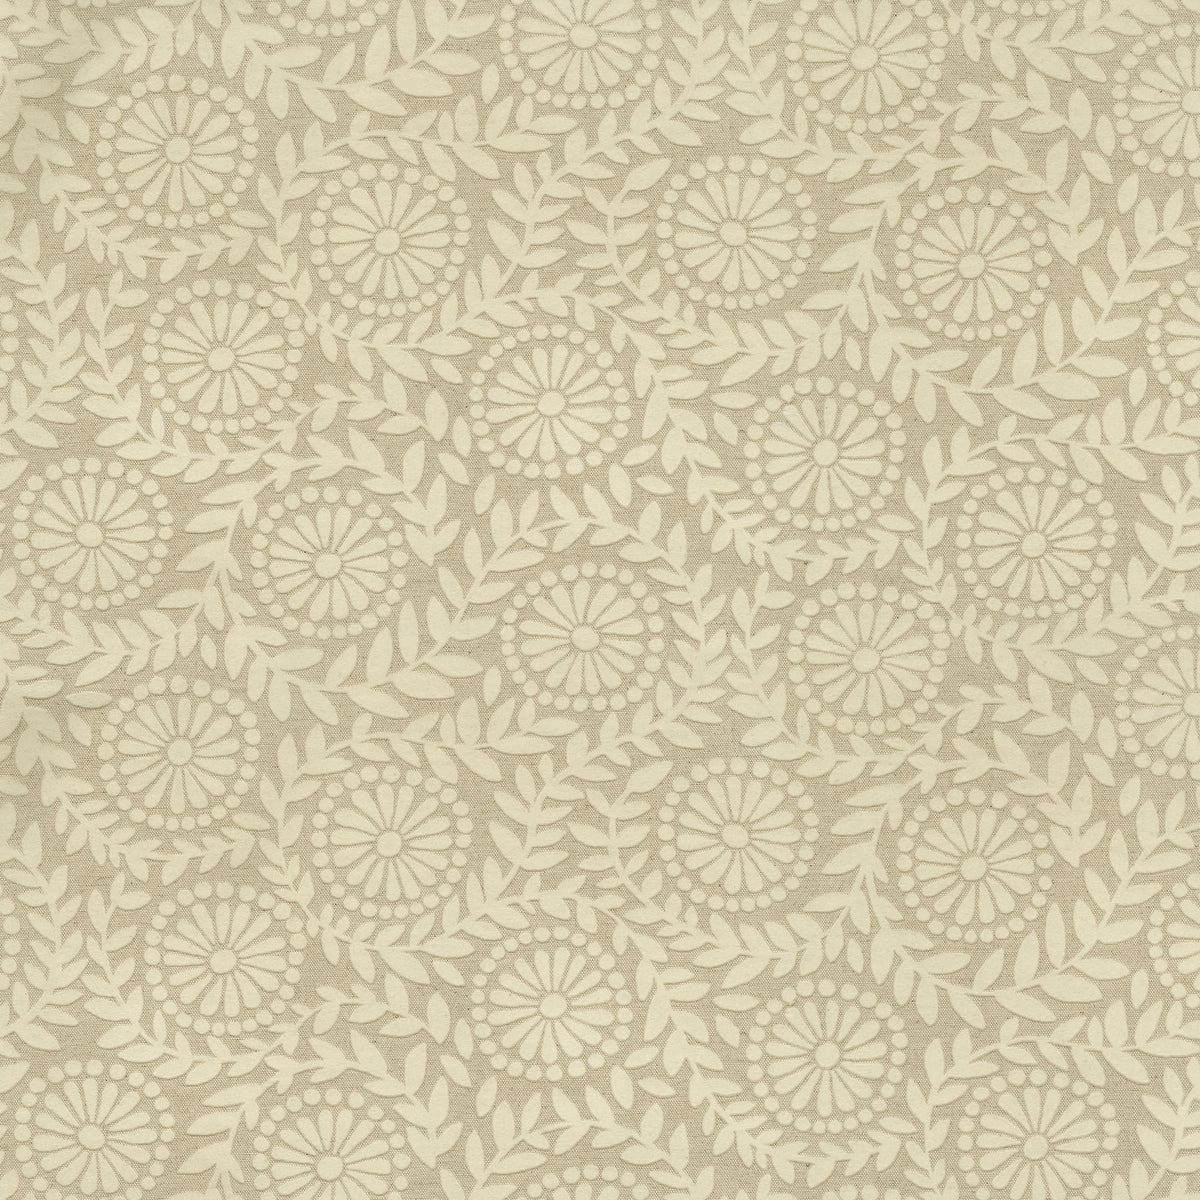 P/K Lifestyles Flock Botanical - Ivory 411641 Upholstery Fabric